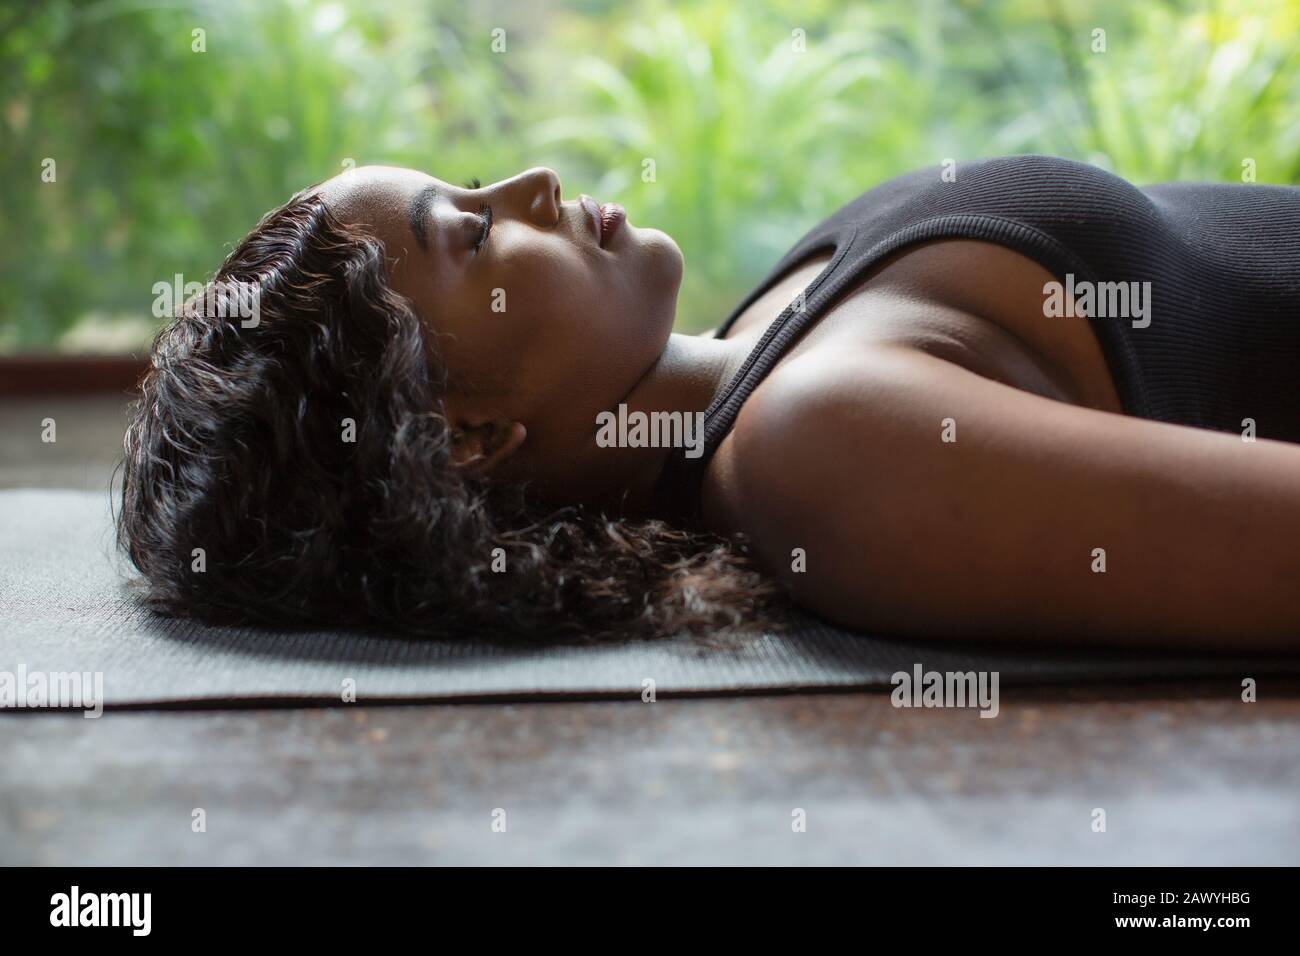 Heitere junge Frau, die in Leichenstellung auf Yogamatte legt Stockfoto